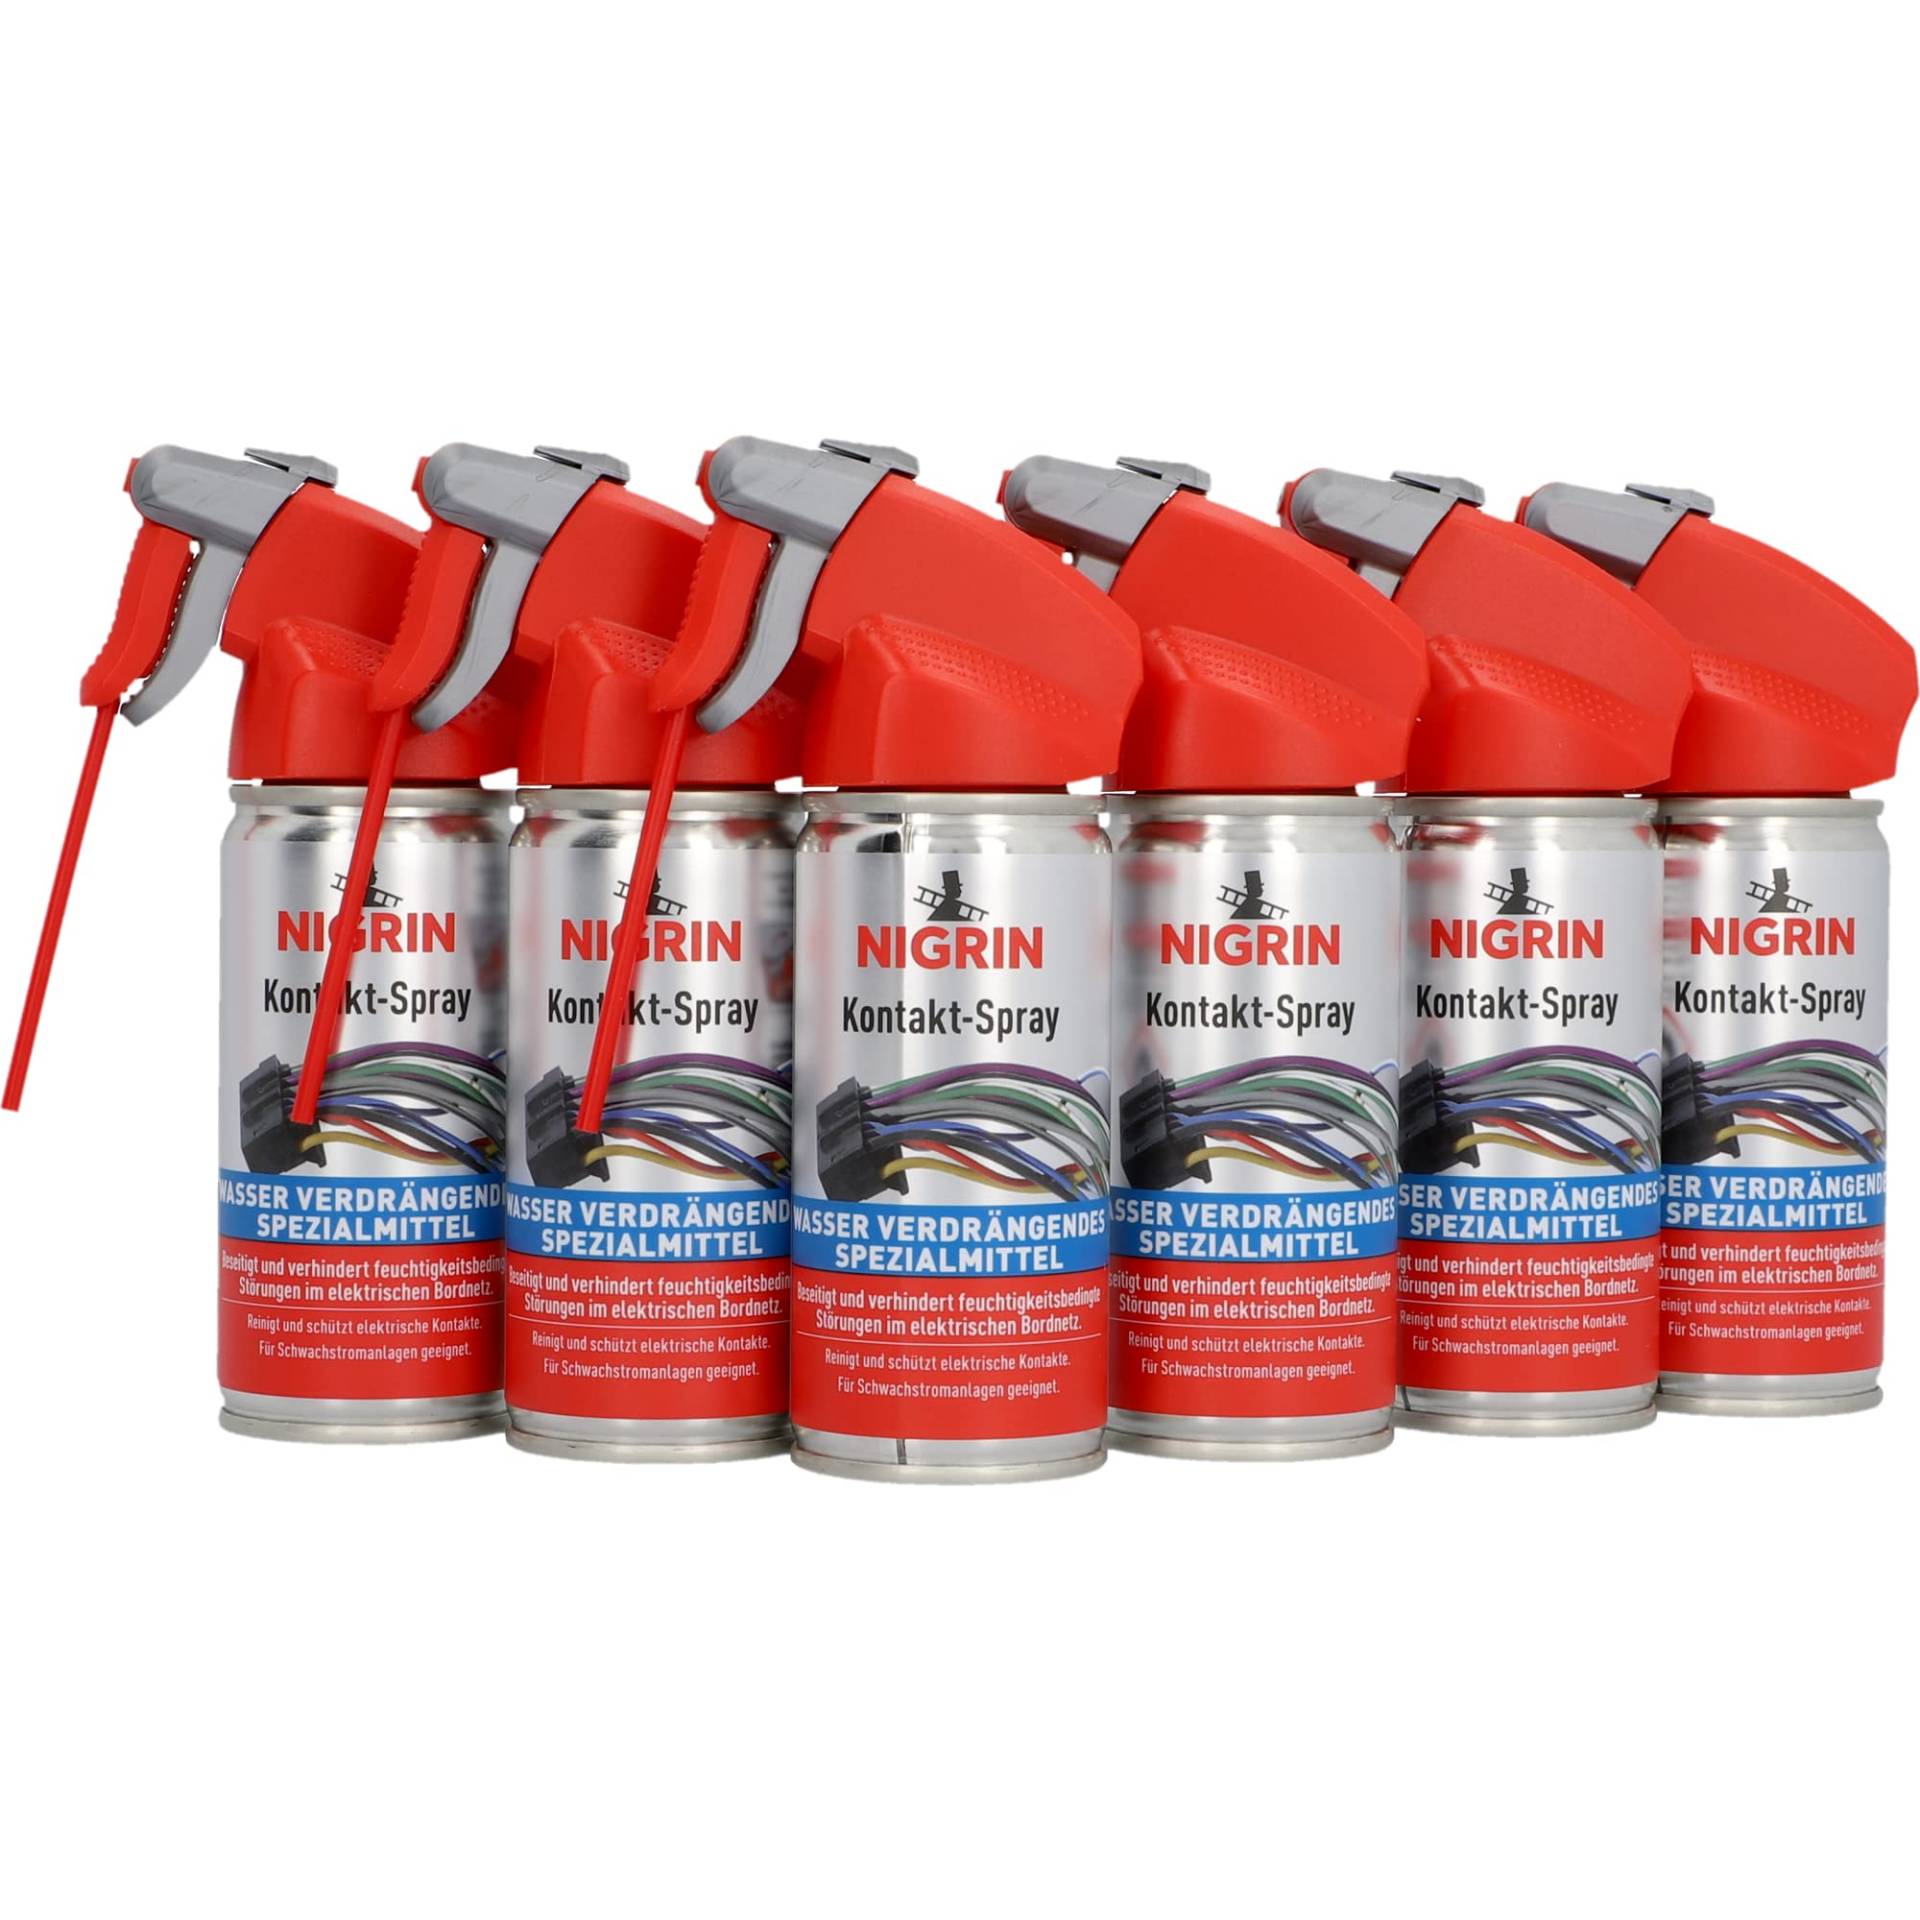 NIGRIN Kontakt-Spray für Elektronik, 6 x 100 ml, zur Reinigung und Schutz von elektronischen Kontakten von NIGRIN